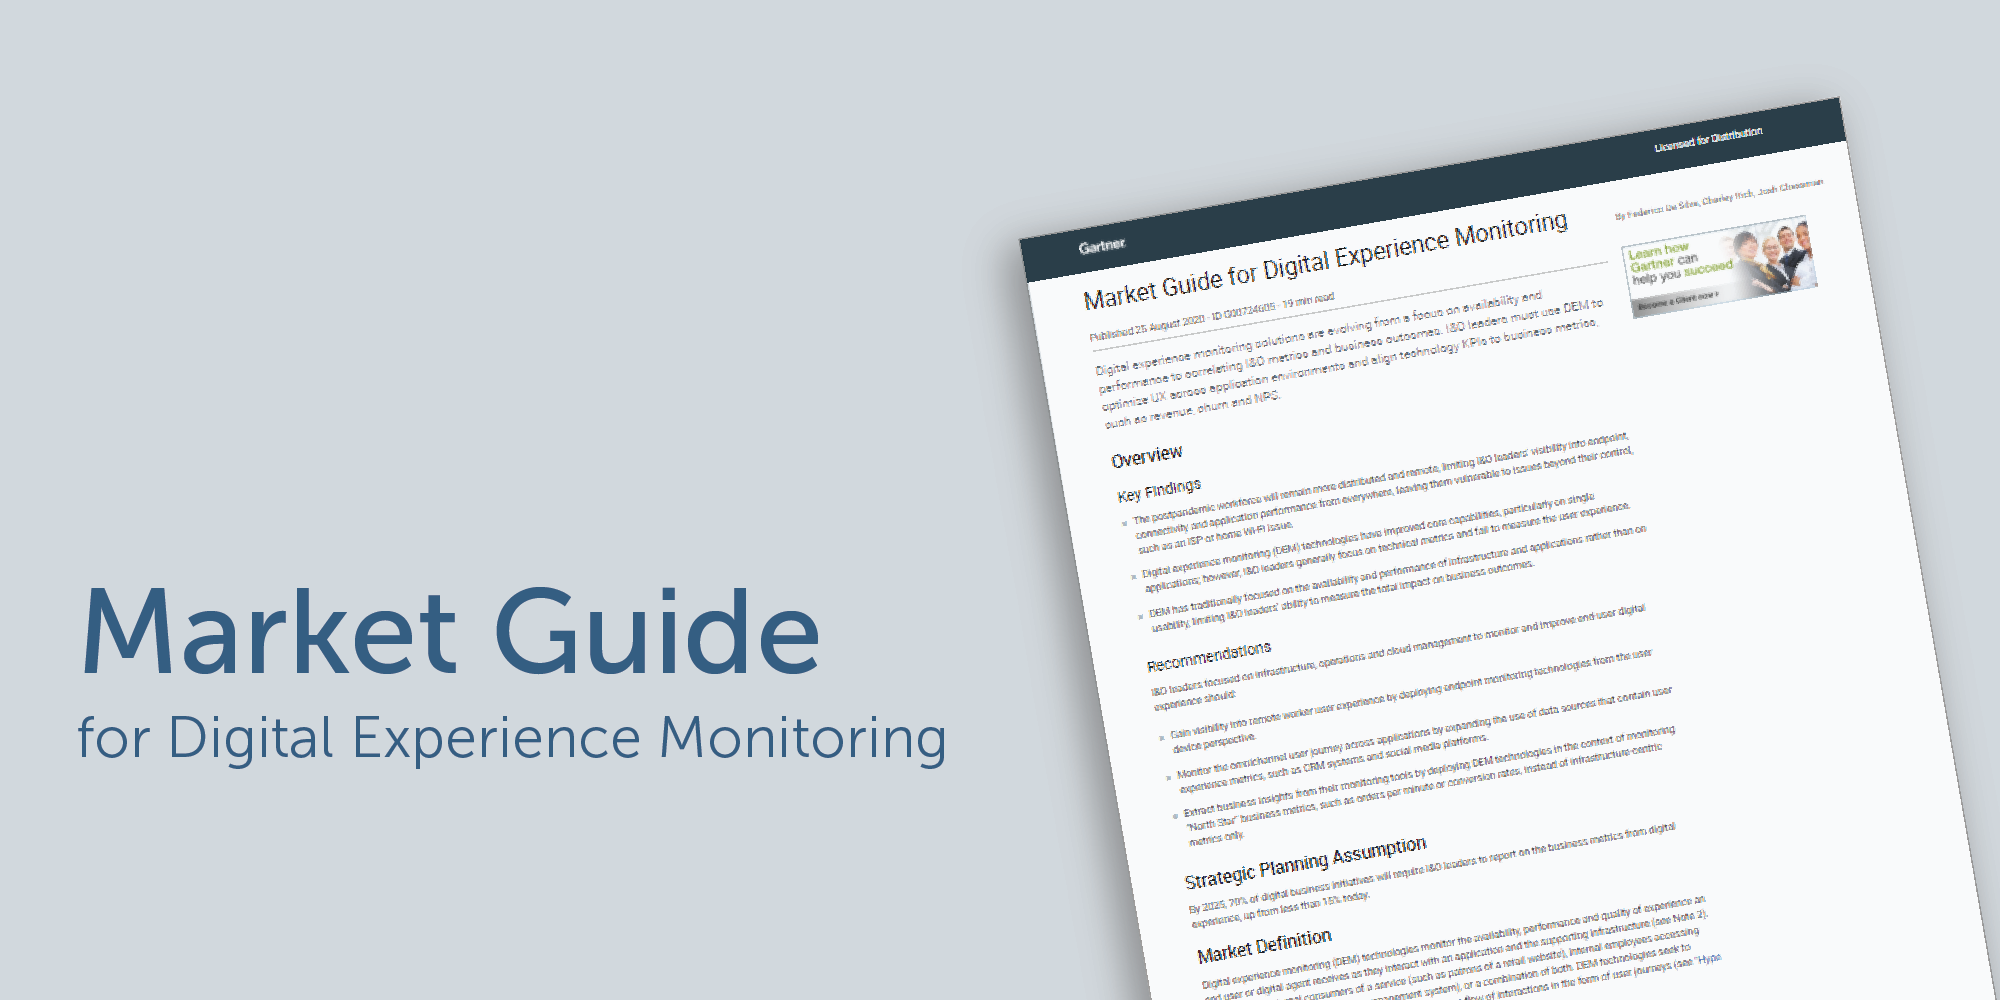 1E named in Gartner’s Market Guide for Digital Experience Monitoring